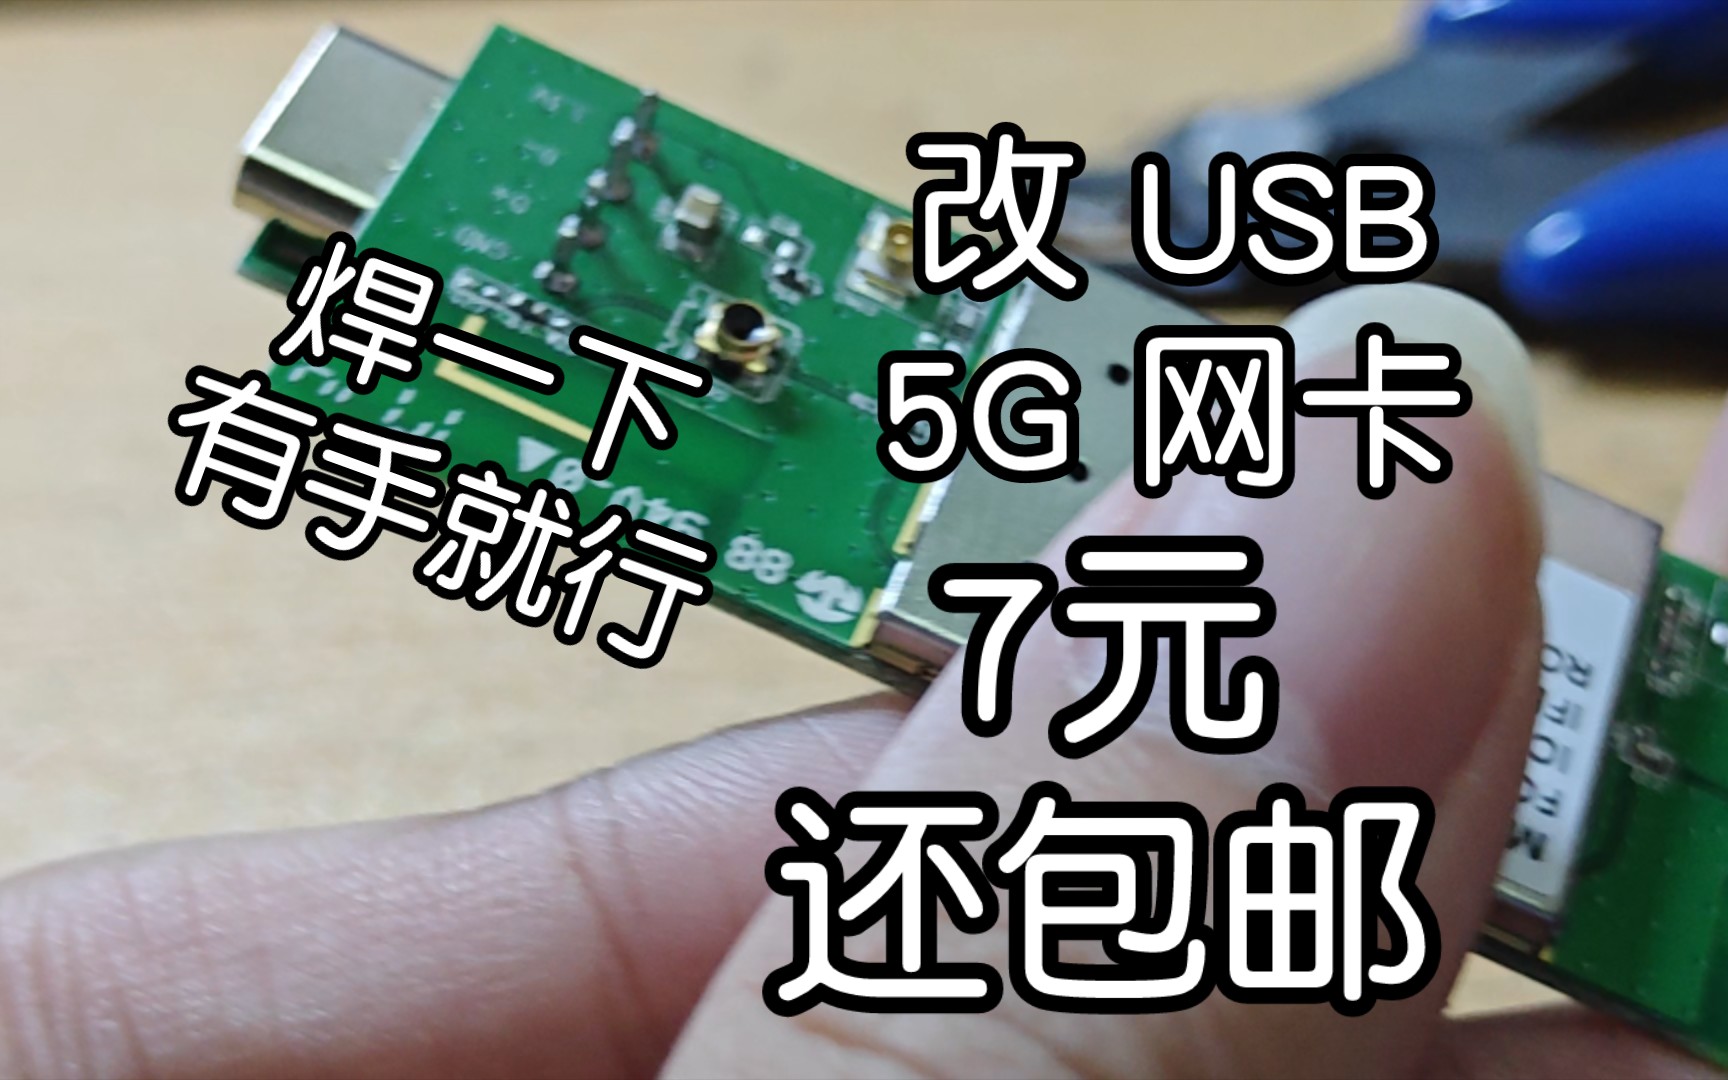 「咩咩焊接」打造仅7元的RTL8812AU无线网卡 USB 5G WiFi Kail免驱兼容性巨好 PCB开源